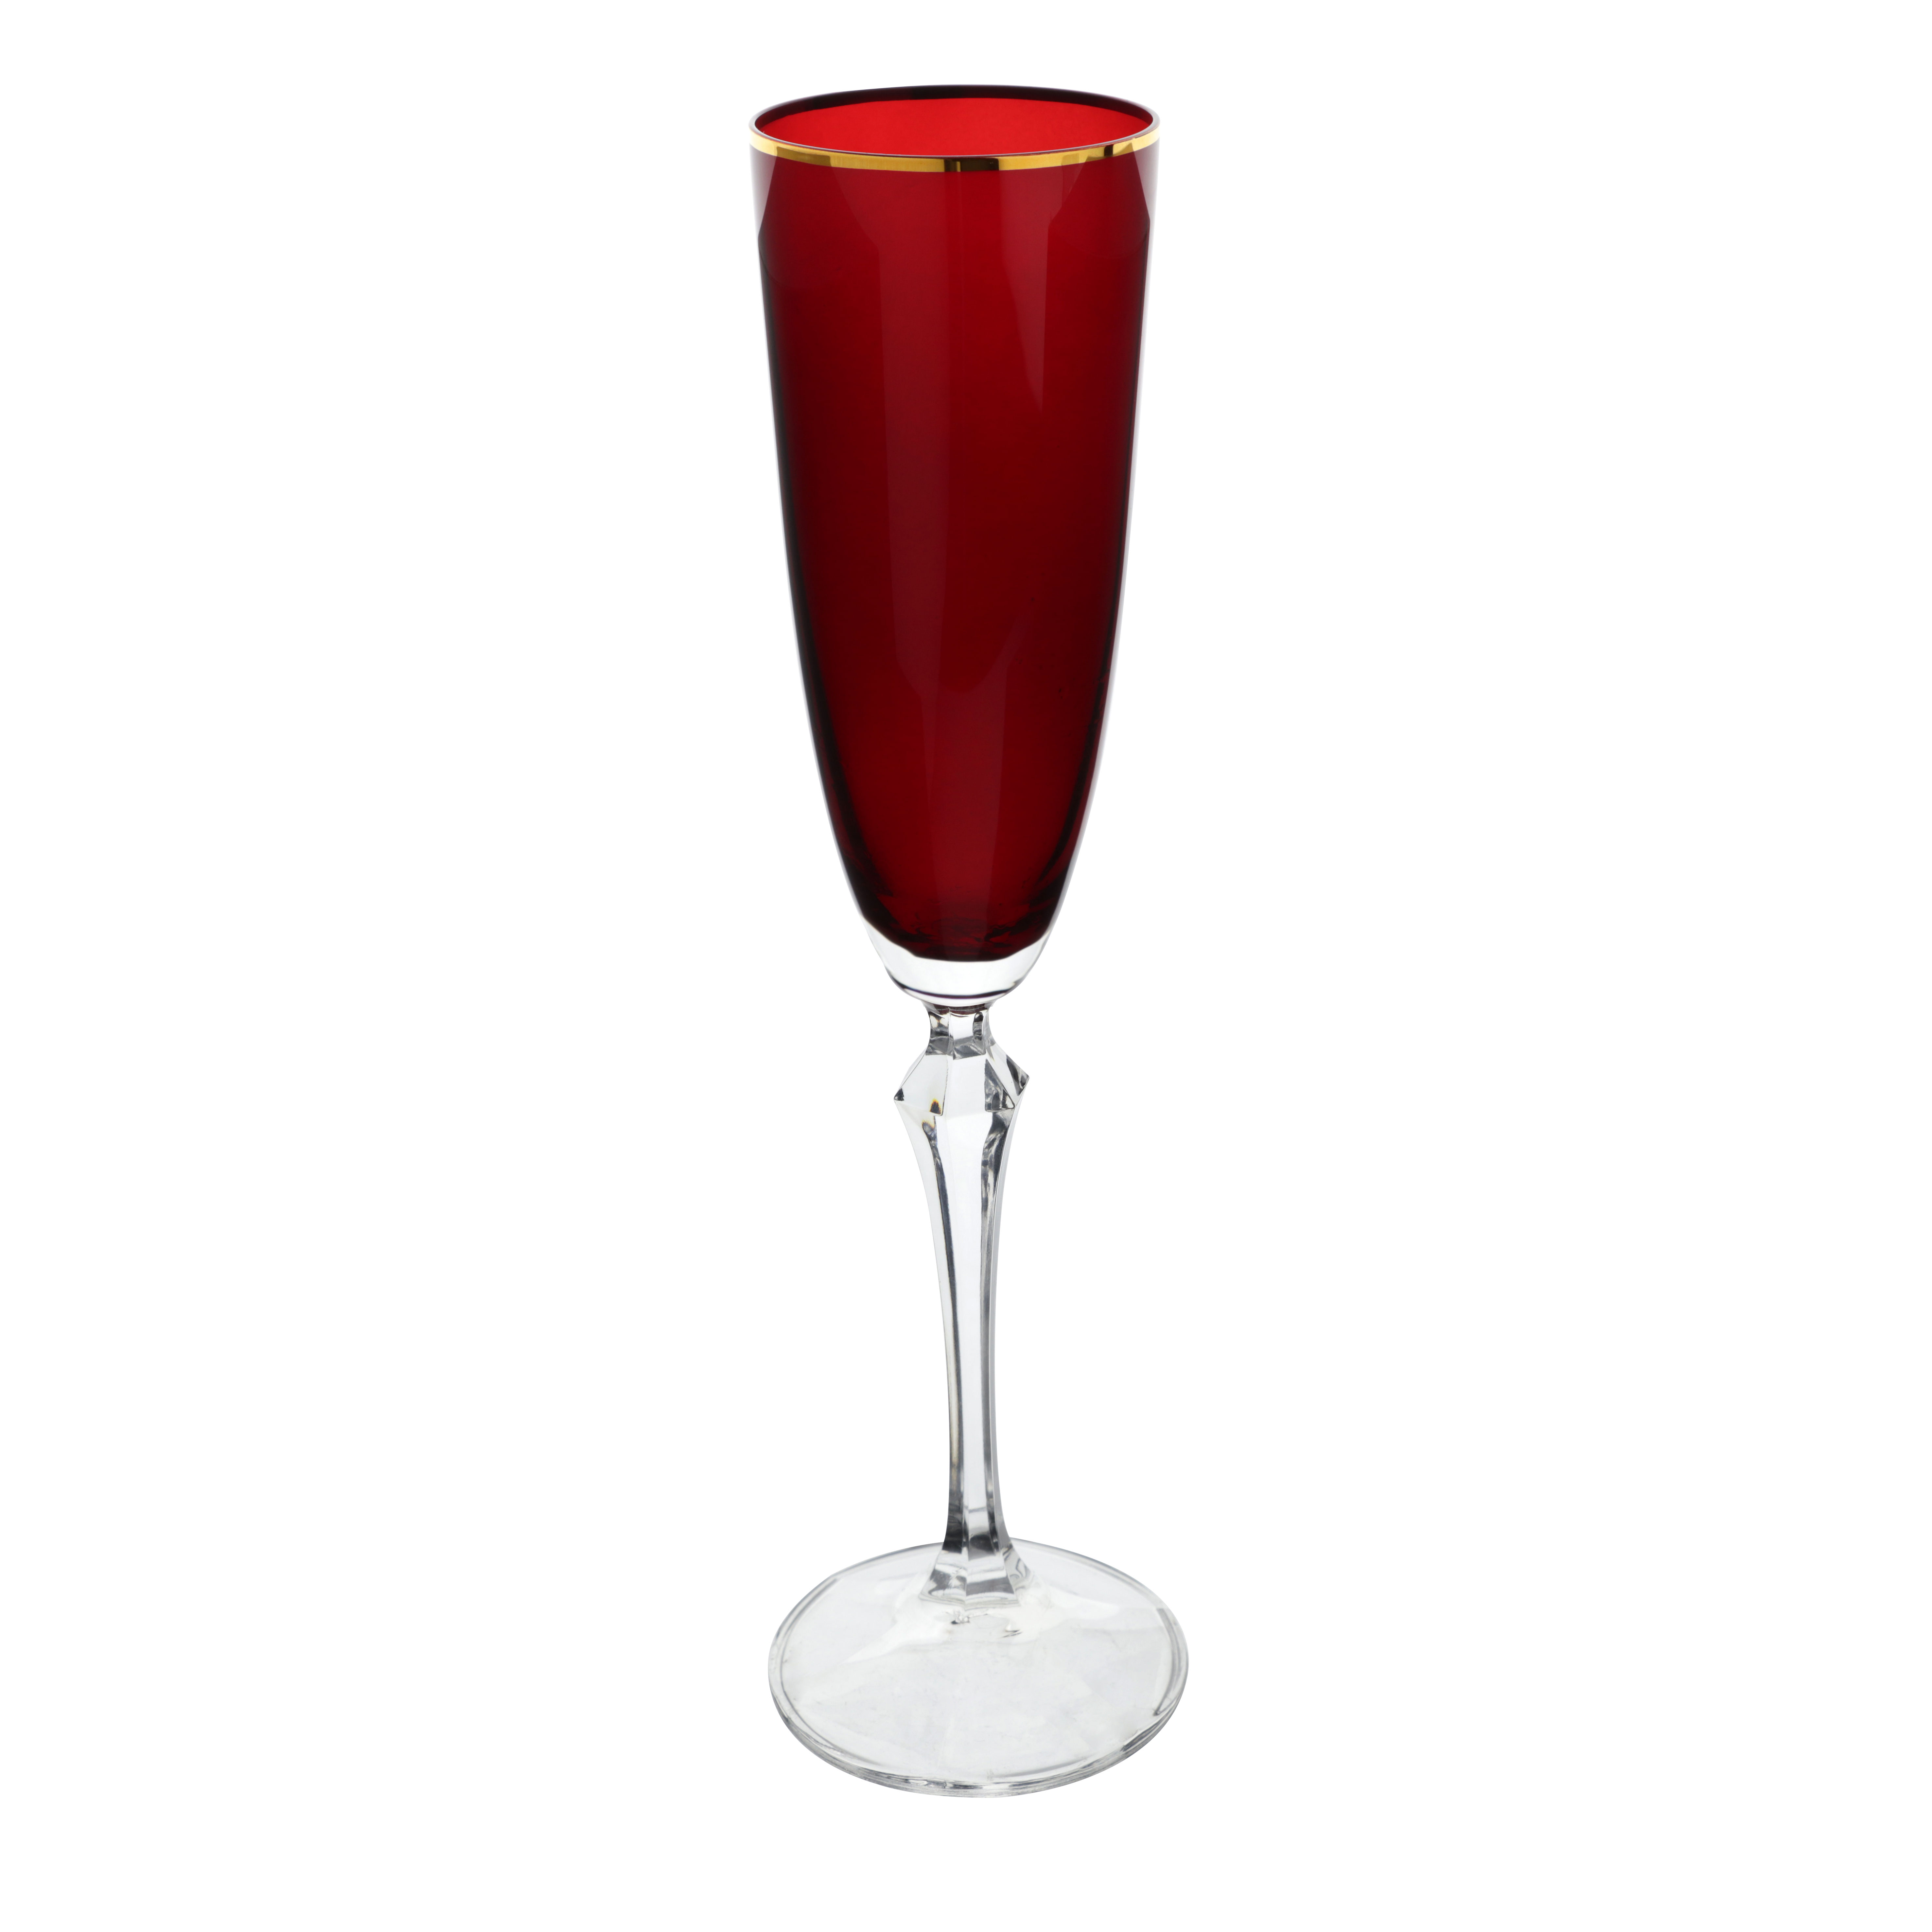 Jogo de 6 tacas para champanhe Elizabeth Gold Rim em cristal ecologico 200ml A25cm cor vermelha